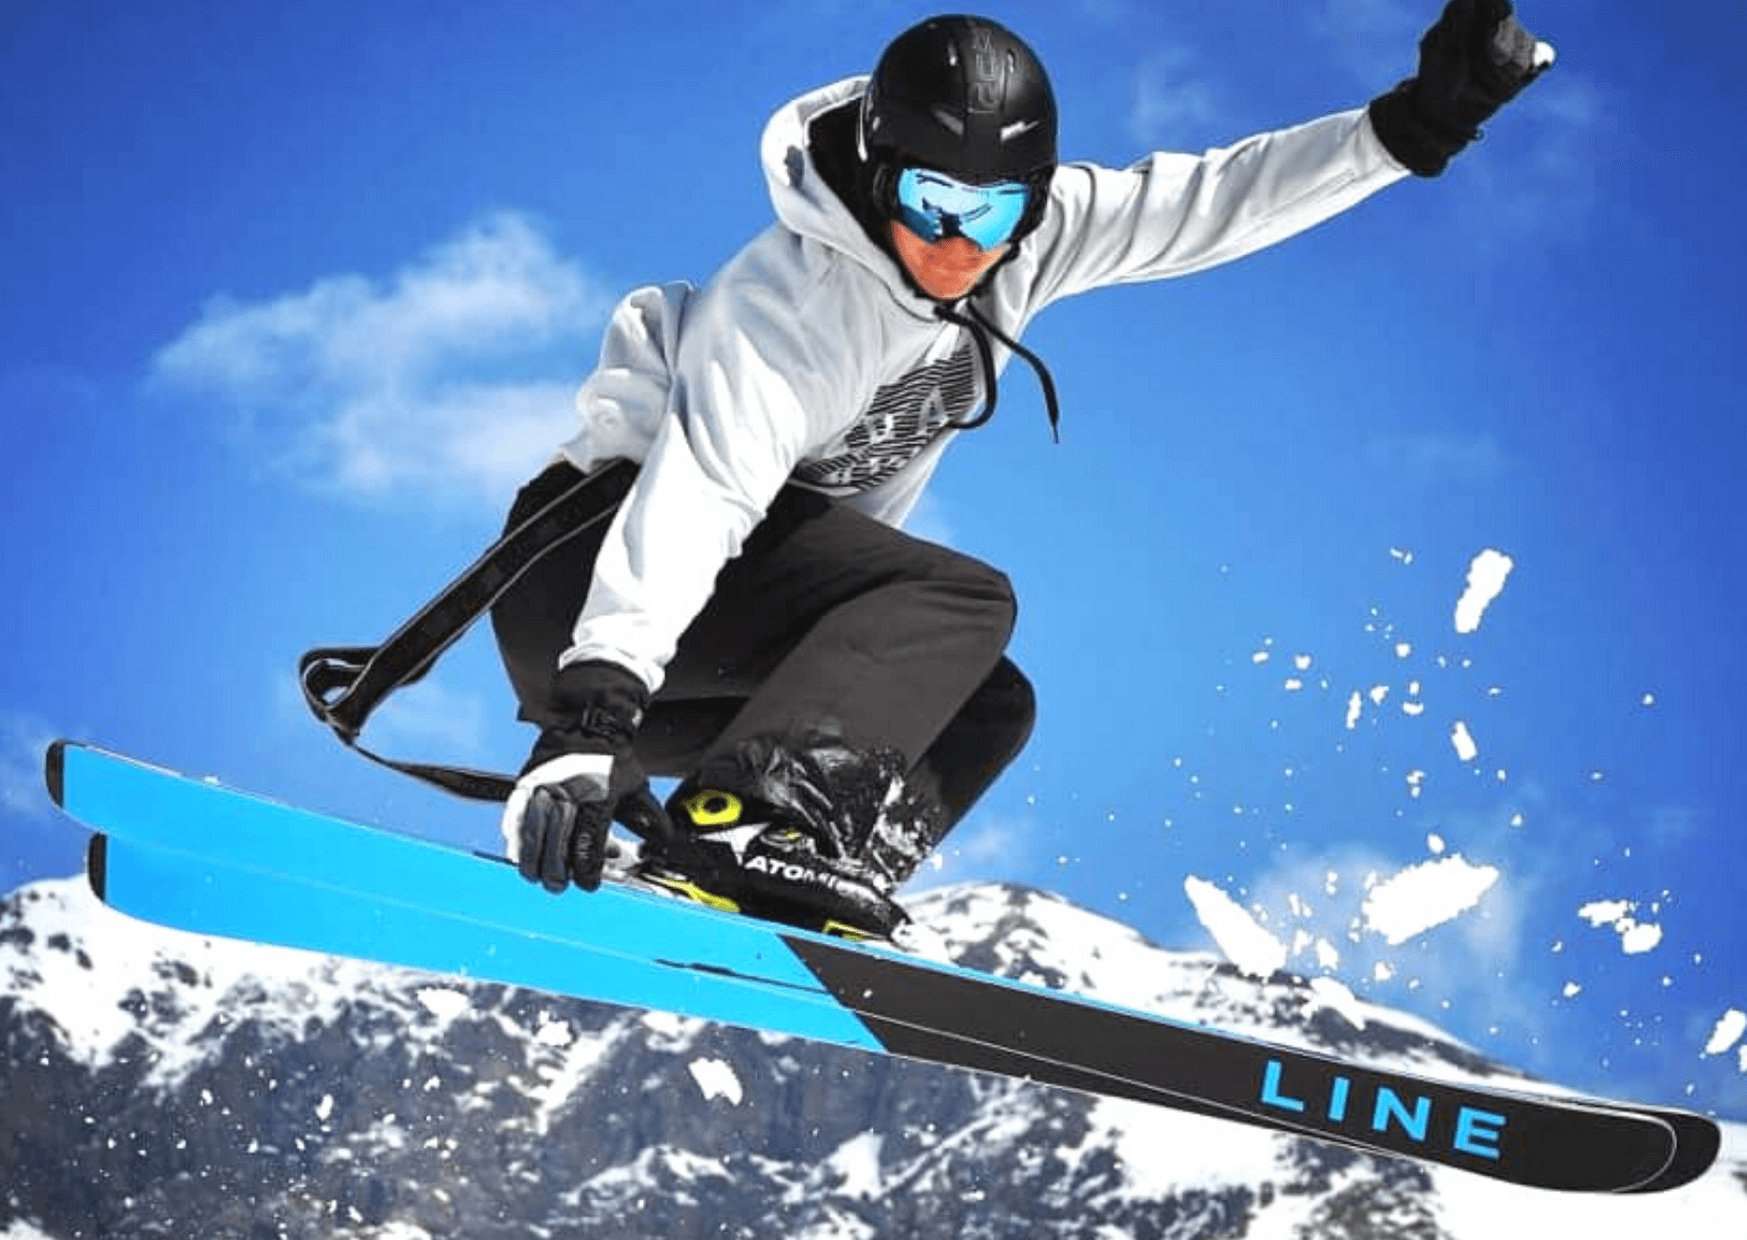 Www skis com. Фристайл (лыжный спорт). Горный фристайл. Горнолыжник фристайл. Фристайл сноуборд.